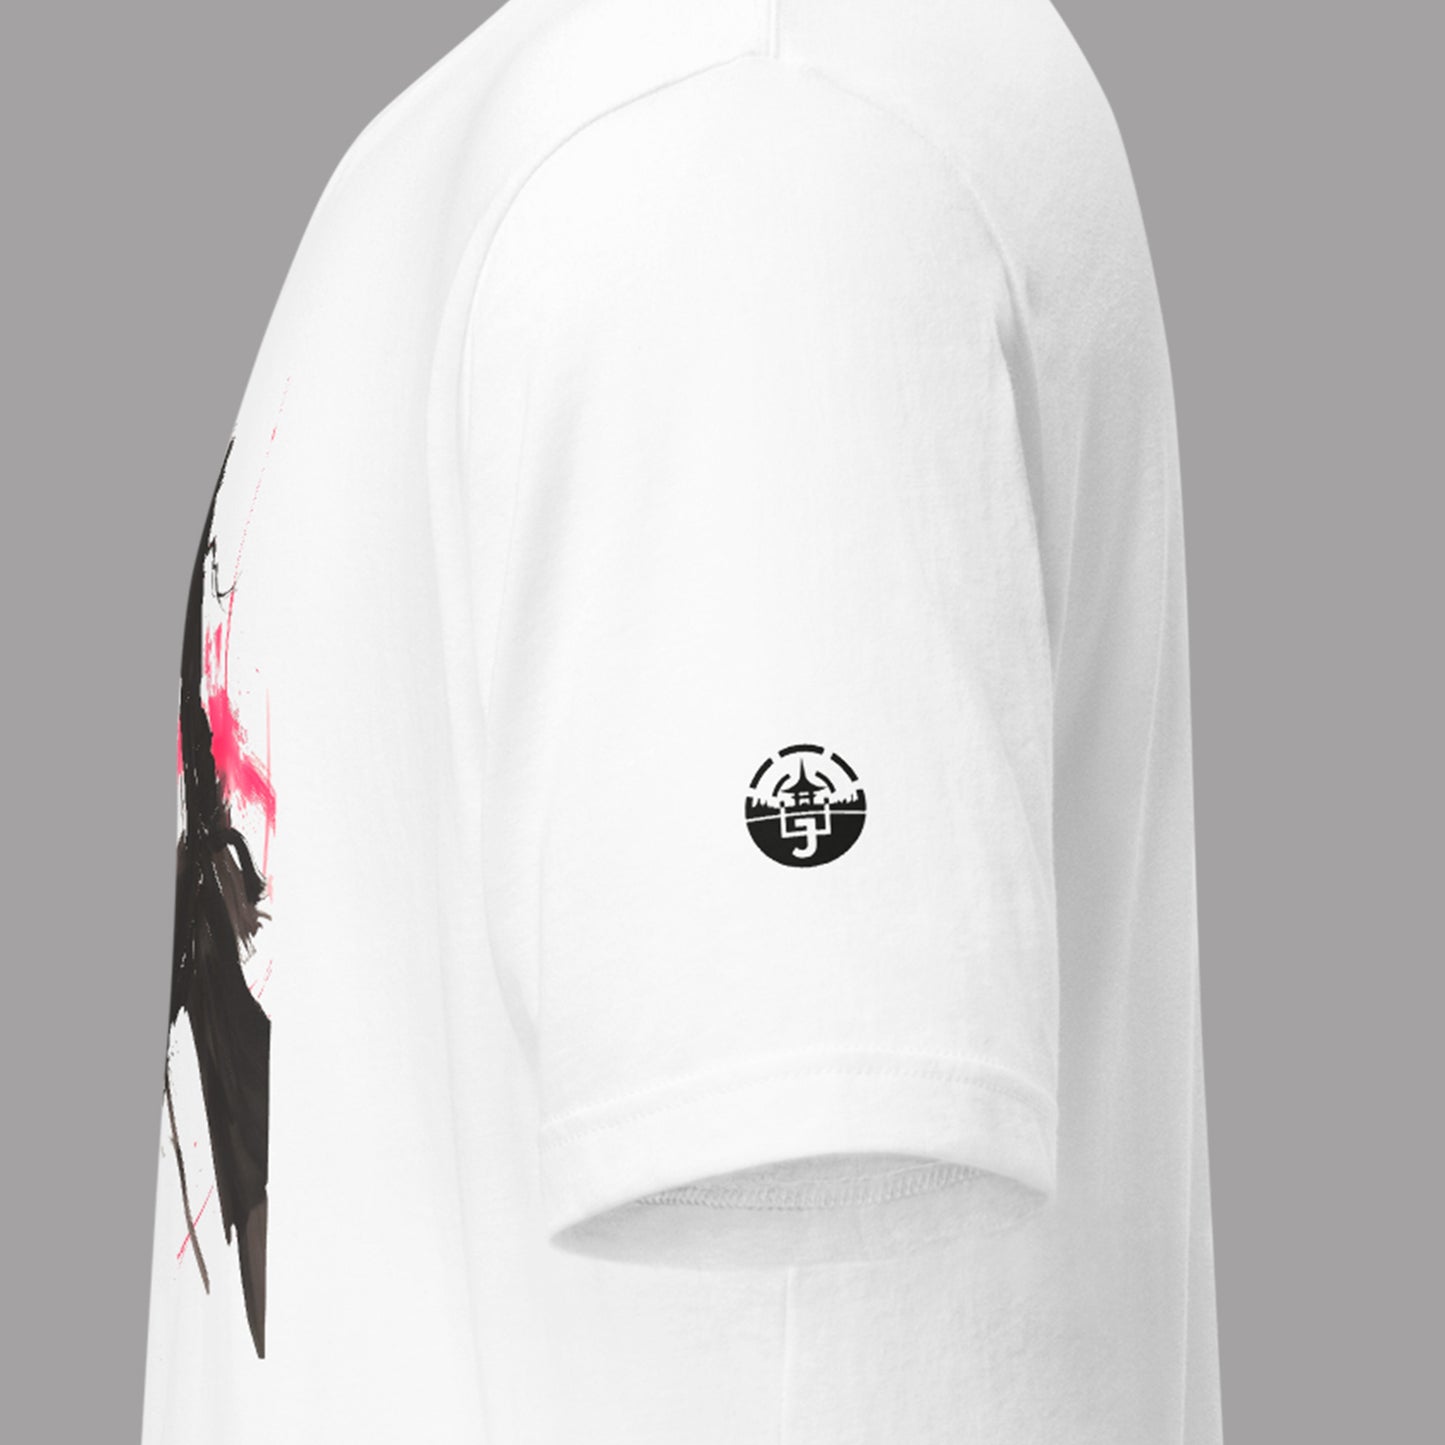 closeup of logo on left sleeve of Kage (影) Unisex t-shirt